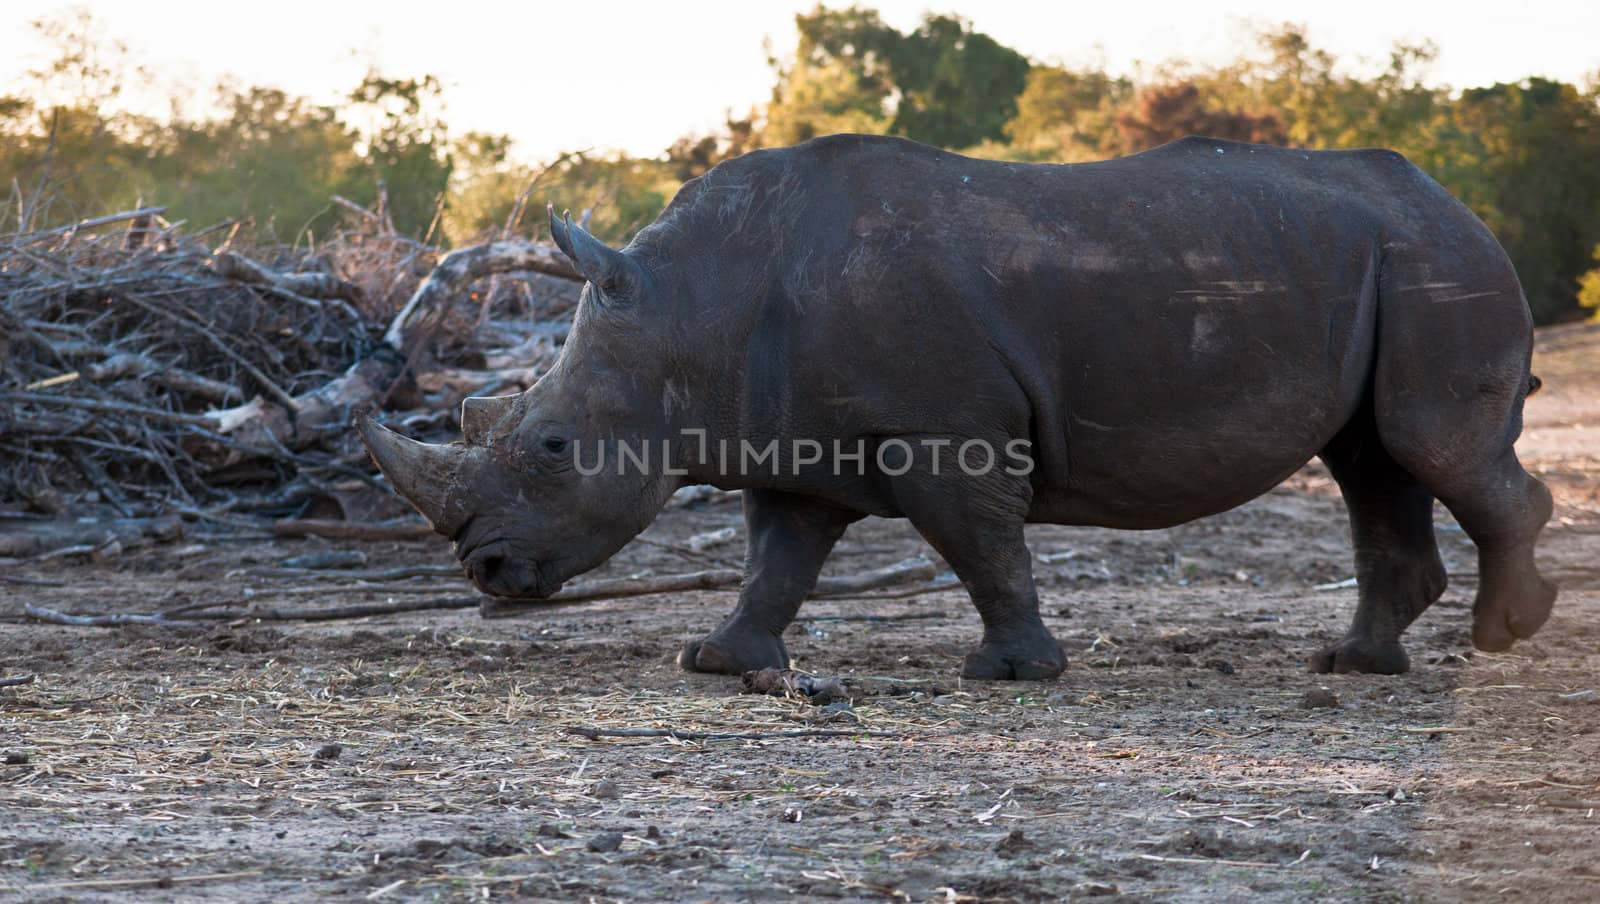 Rhino walking in the field .